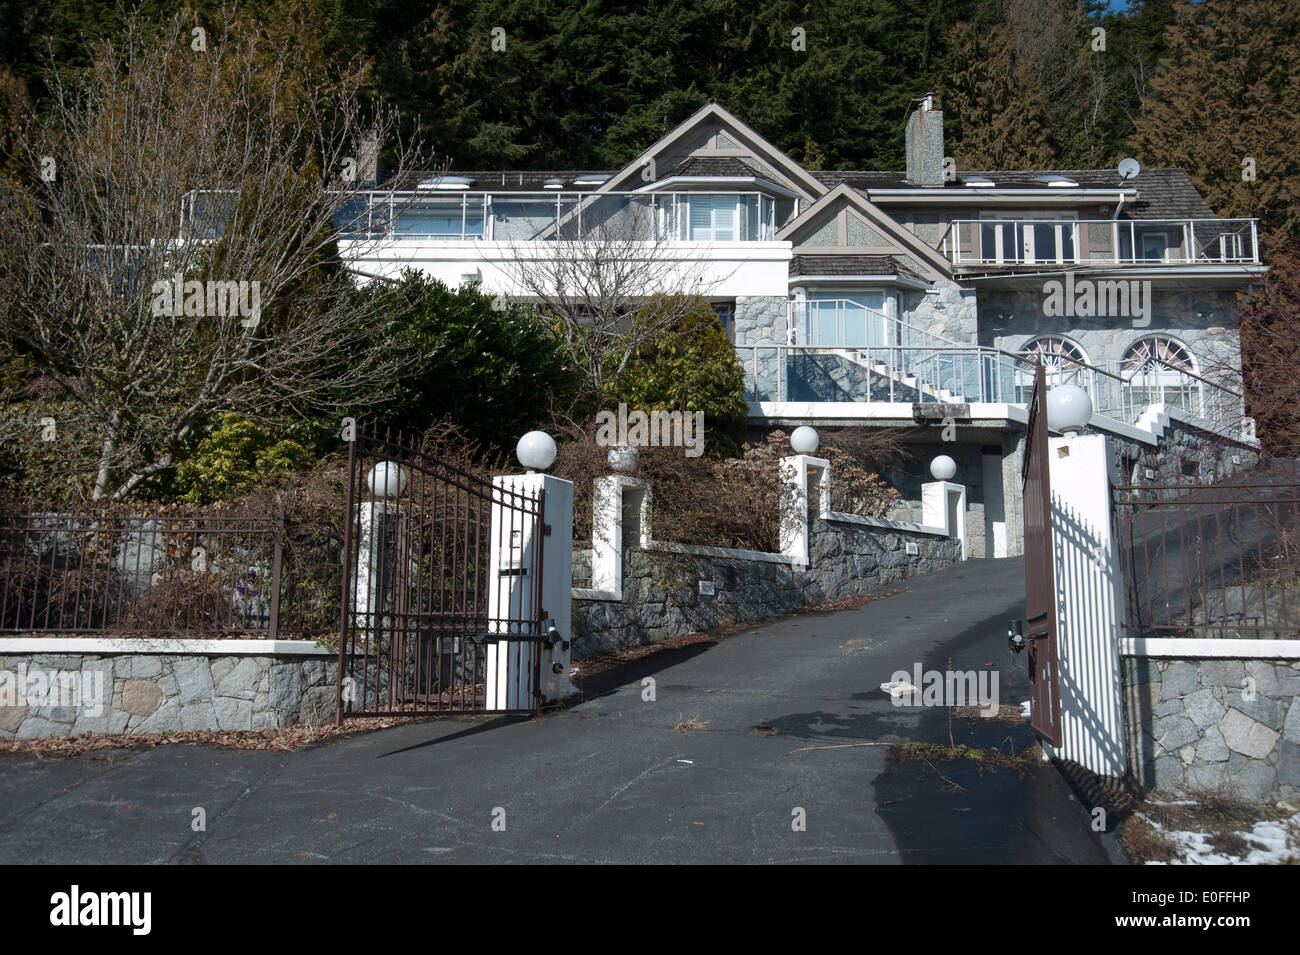 Grande maison et synchronisées dans l'entrée de la propriétés, West Vancouver, British Columbia, Canada Banque D'Images